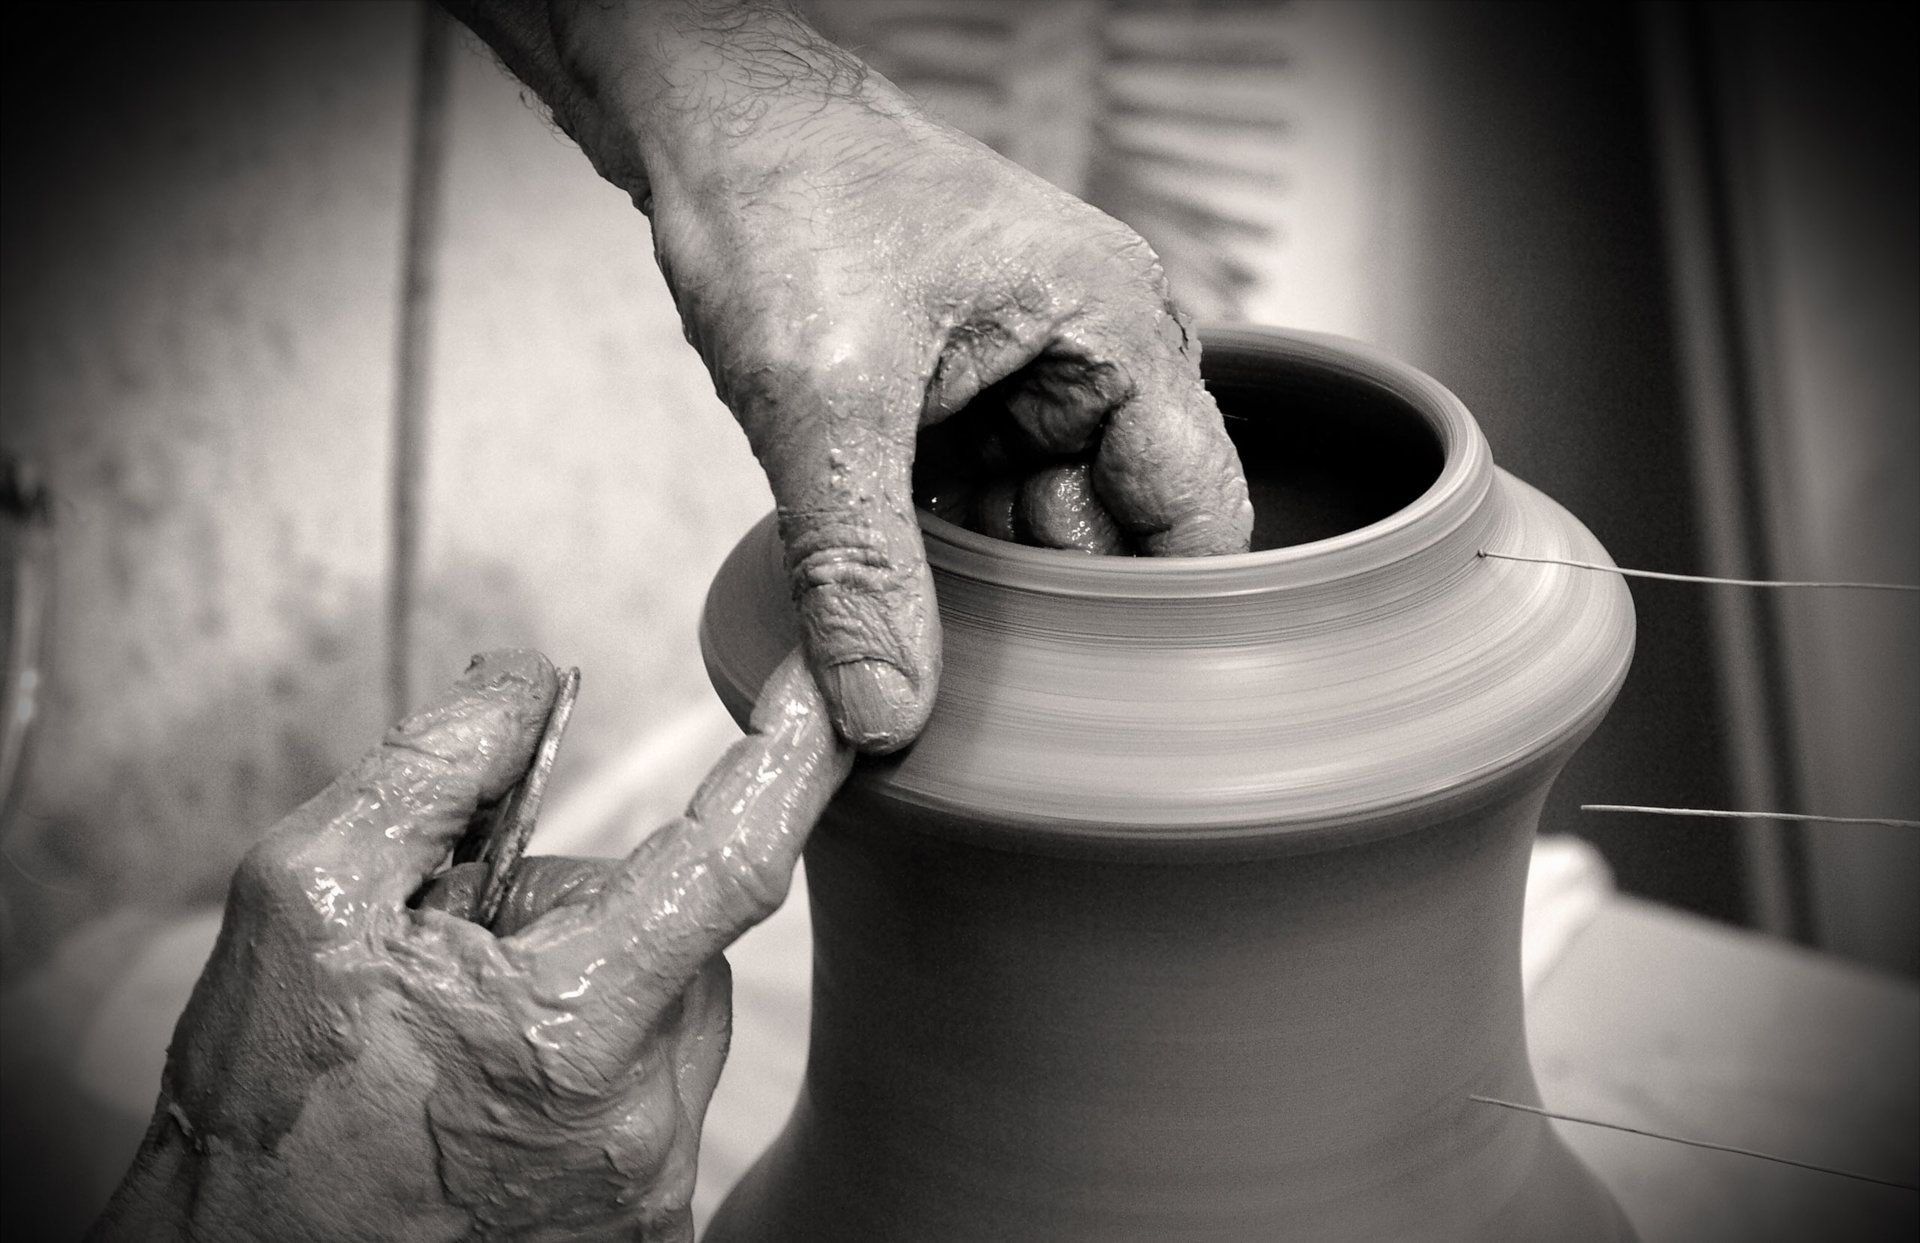 mani che lavorano l'argilla di un vaso sul tornio che ruota